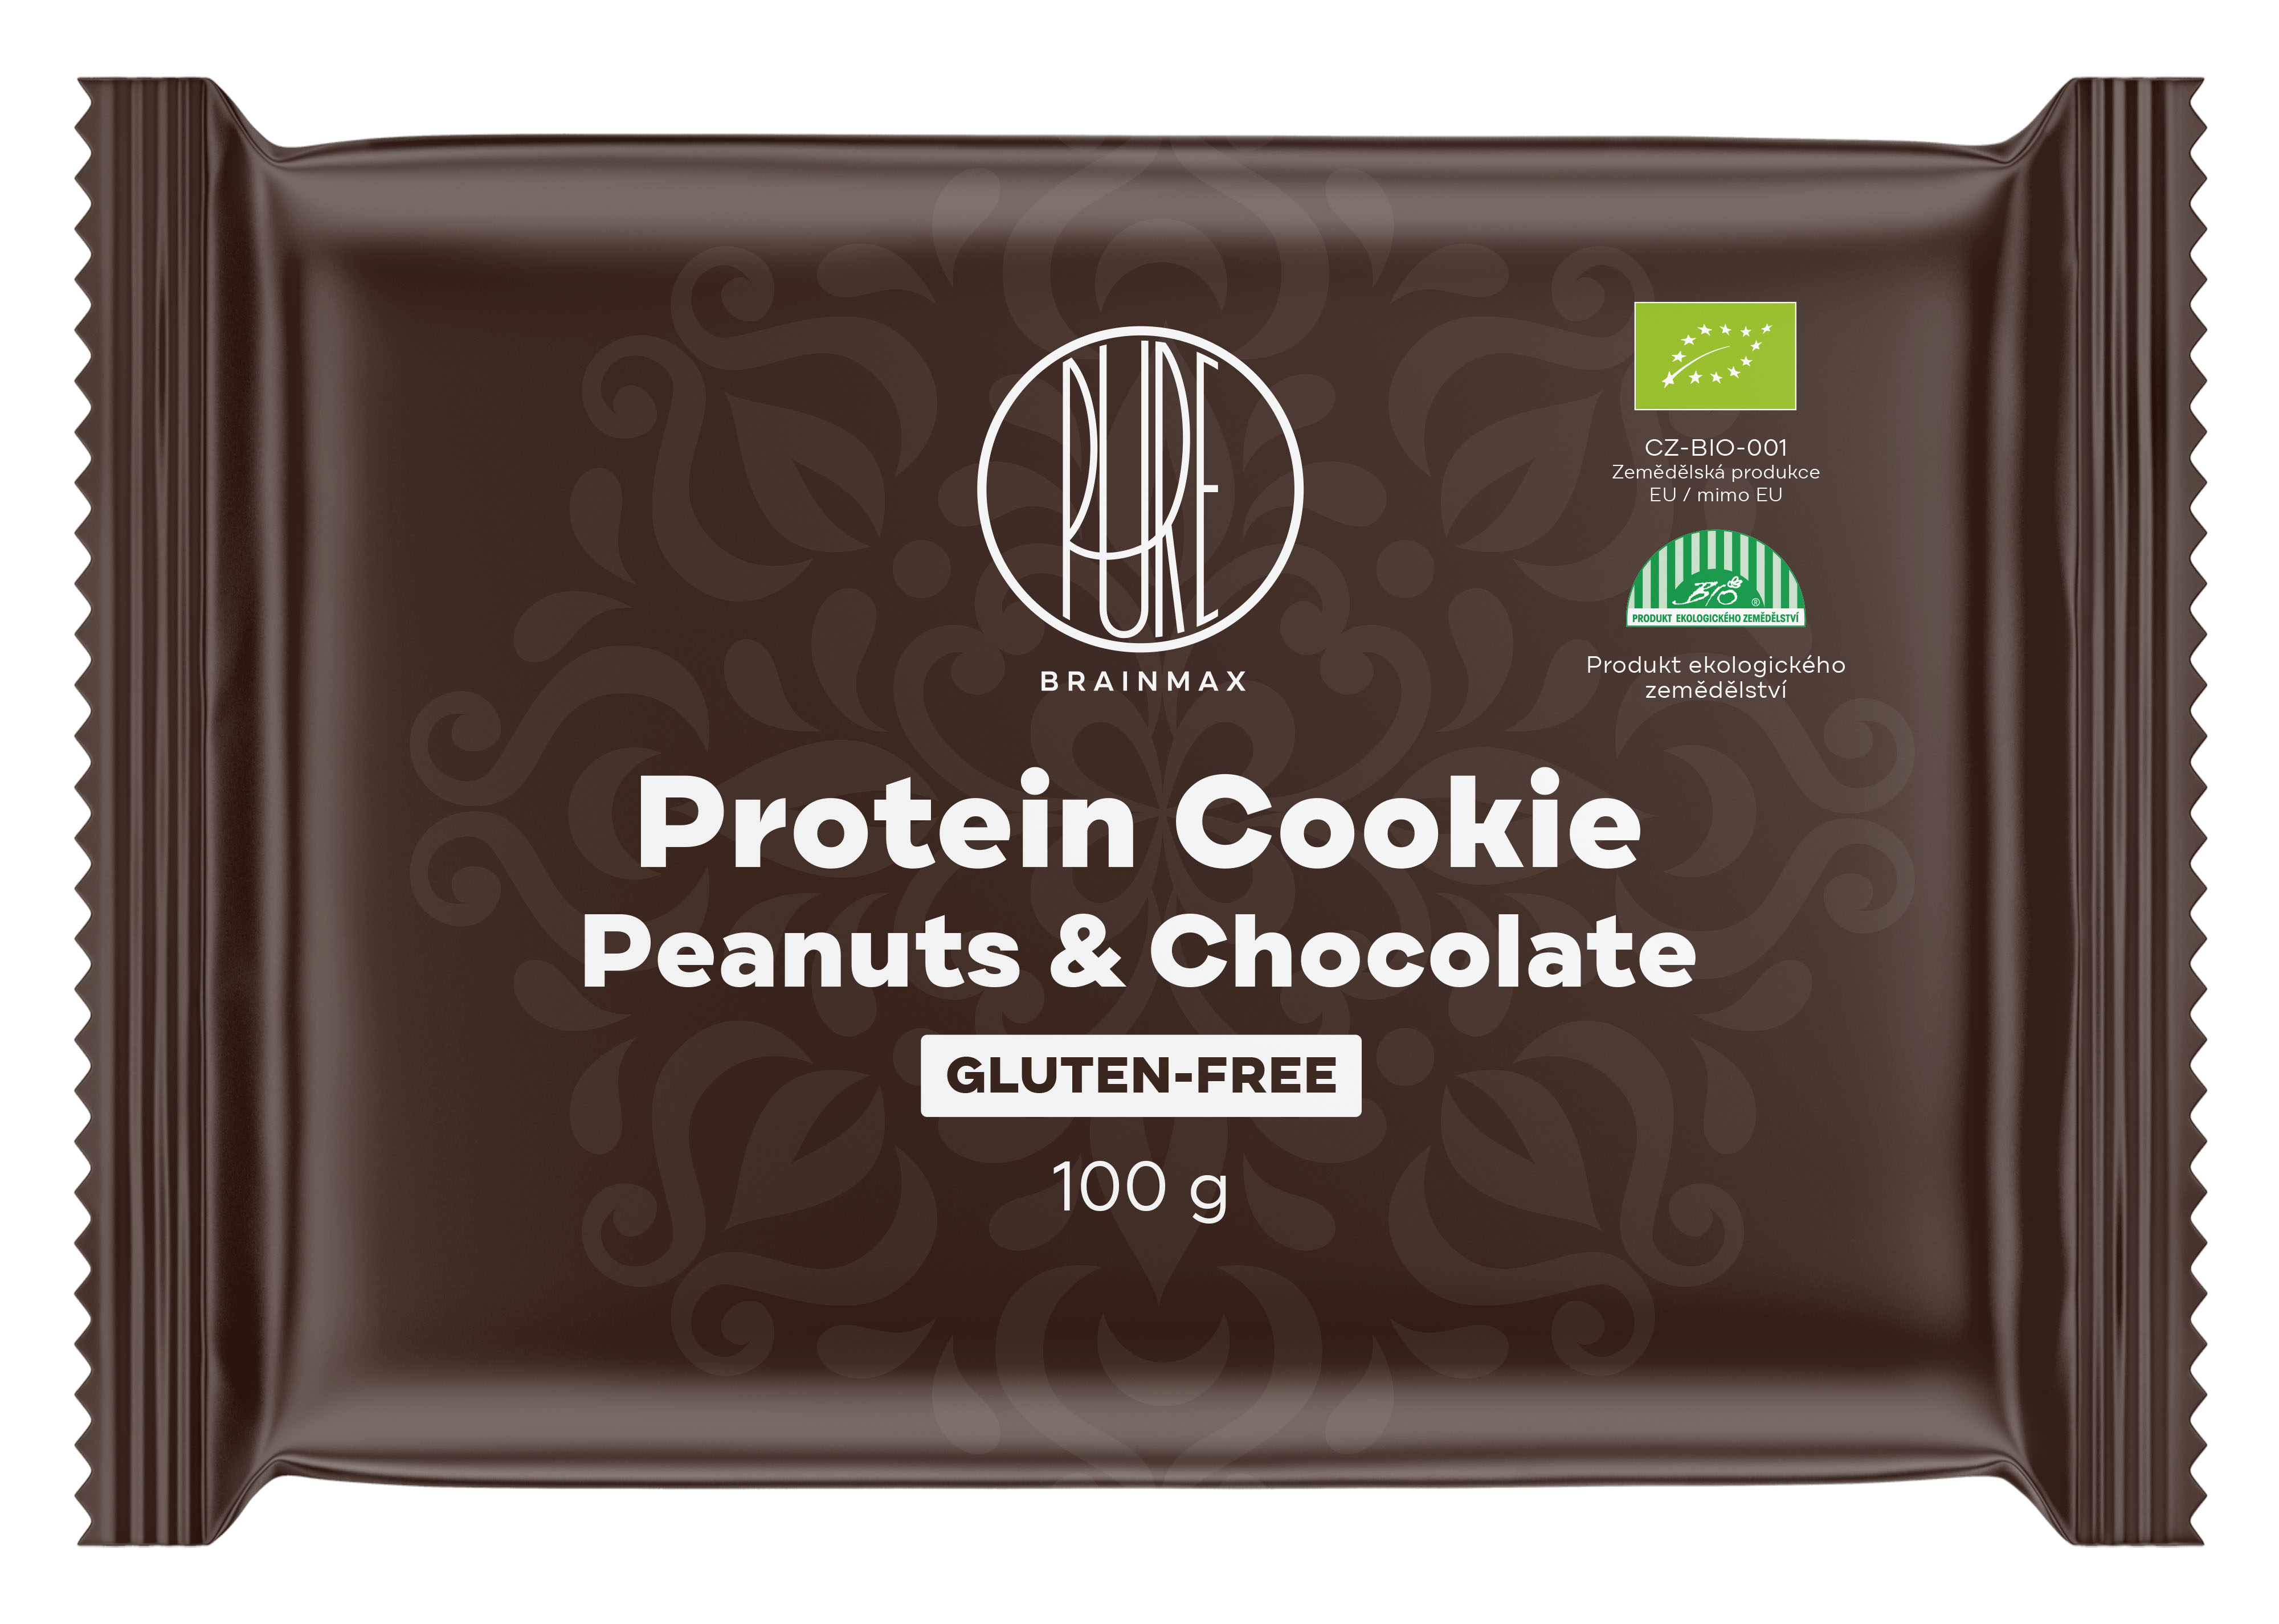 Levně BrainMax Pure Protein Cookie, Arašídy & Čokoláda, BIO, 100 g Proteinová sušenka s hořkou čokoládou a arašídy / *CZ-BIO-001 certifikát